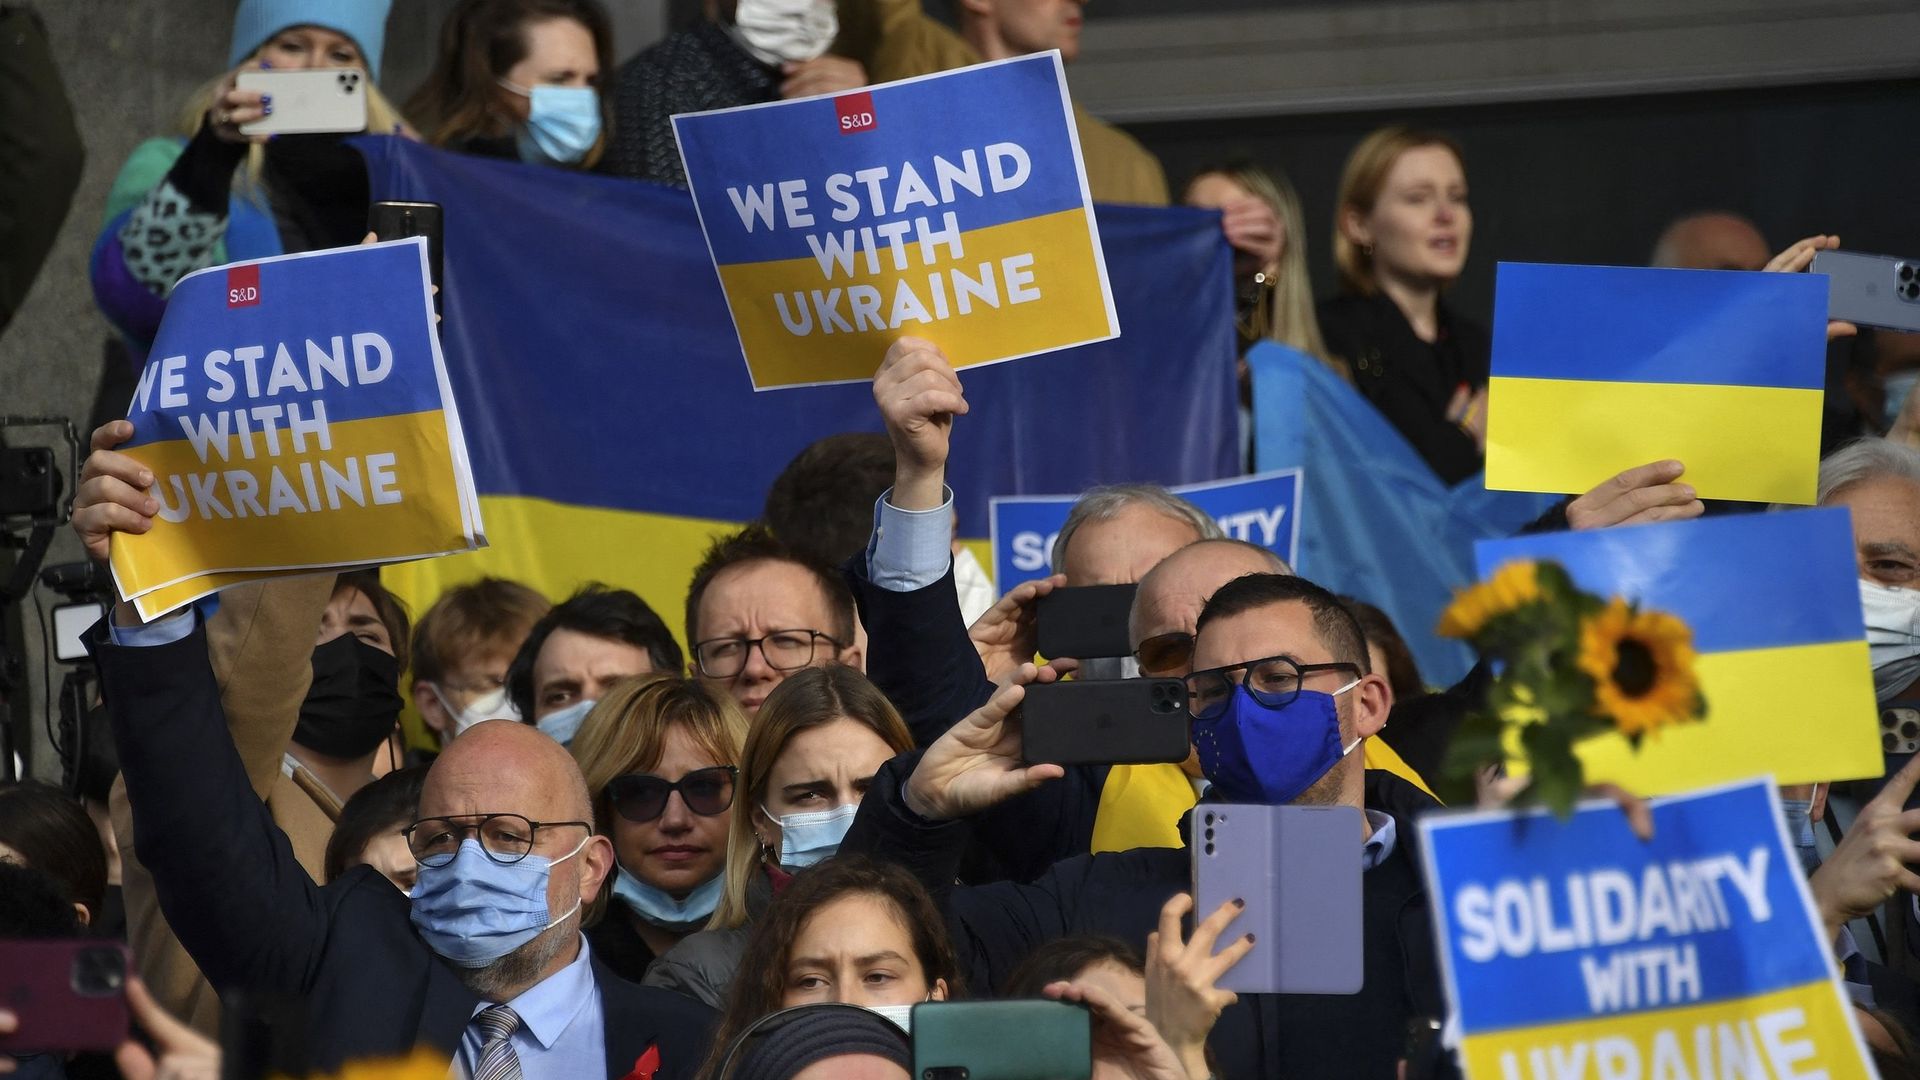 Suite à l’invasion de l’Ukraine par la Russie, la scène internationale ne cesse de multiplier les sanctions afin de montrer son soutien aux victimes ukrainiennes.